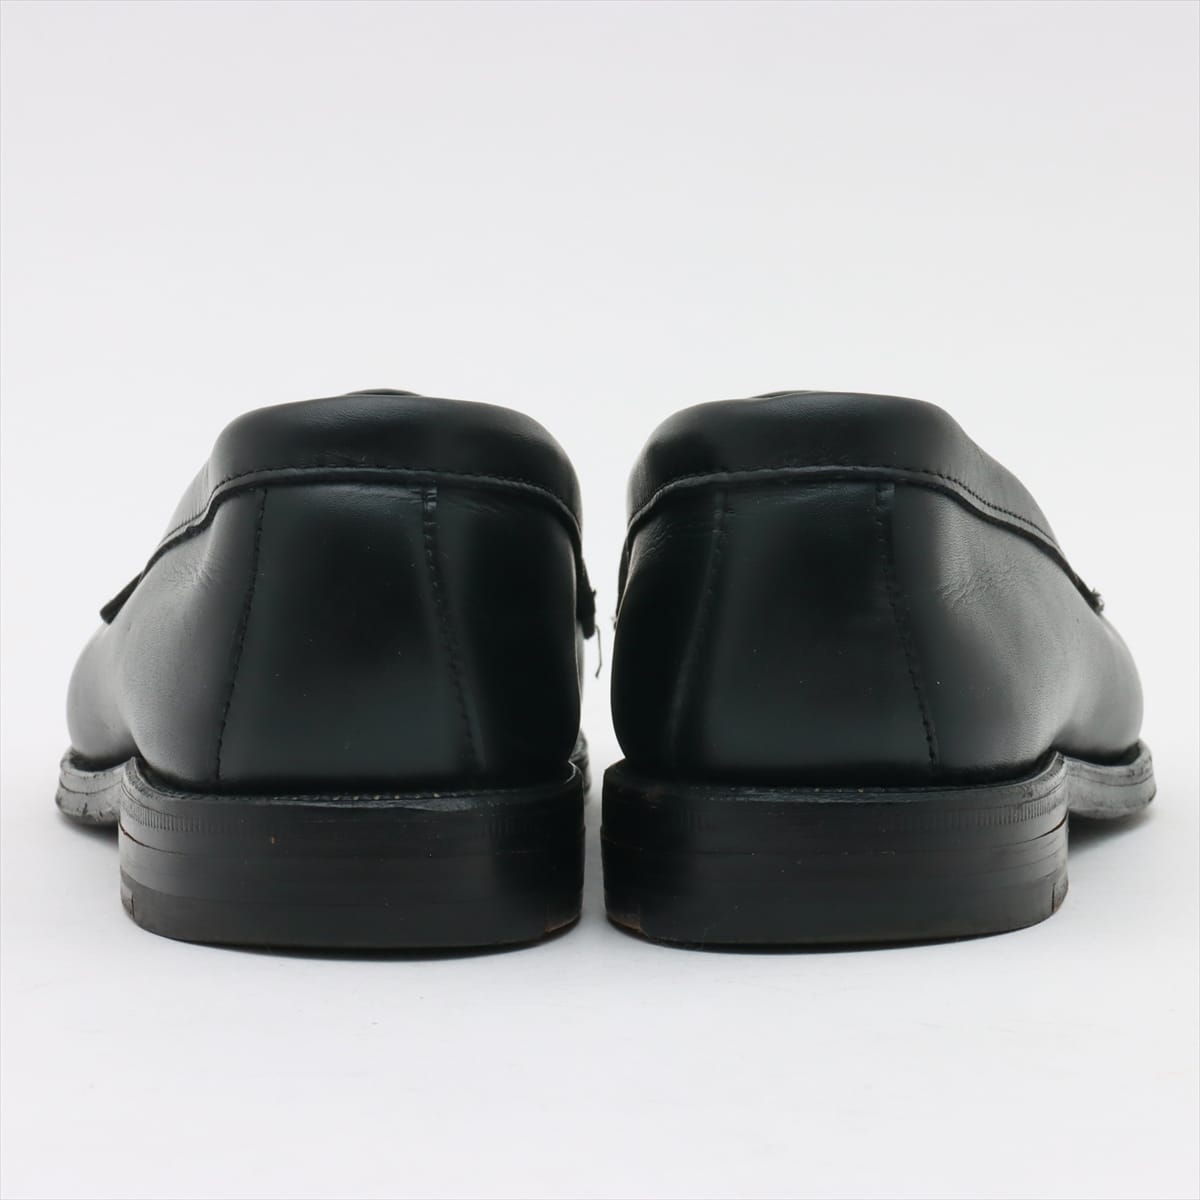 Alden Leather Loafer 6 1/2C Men's Black 981 calf penny loafers